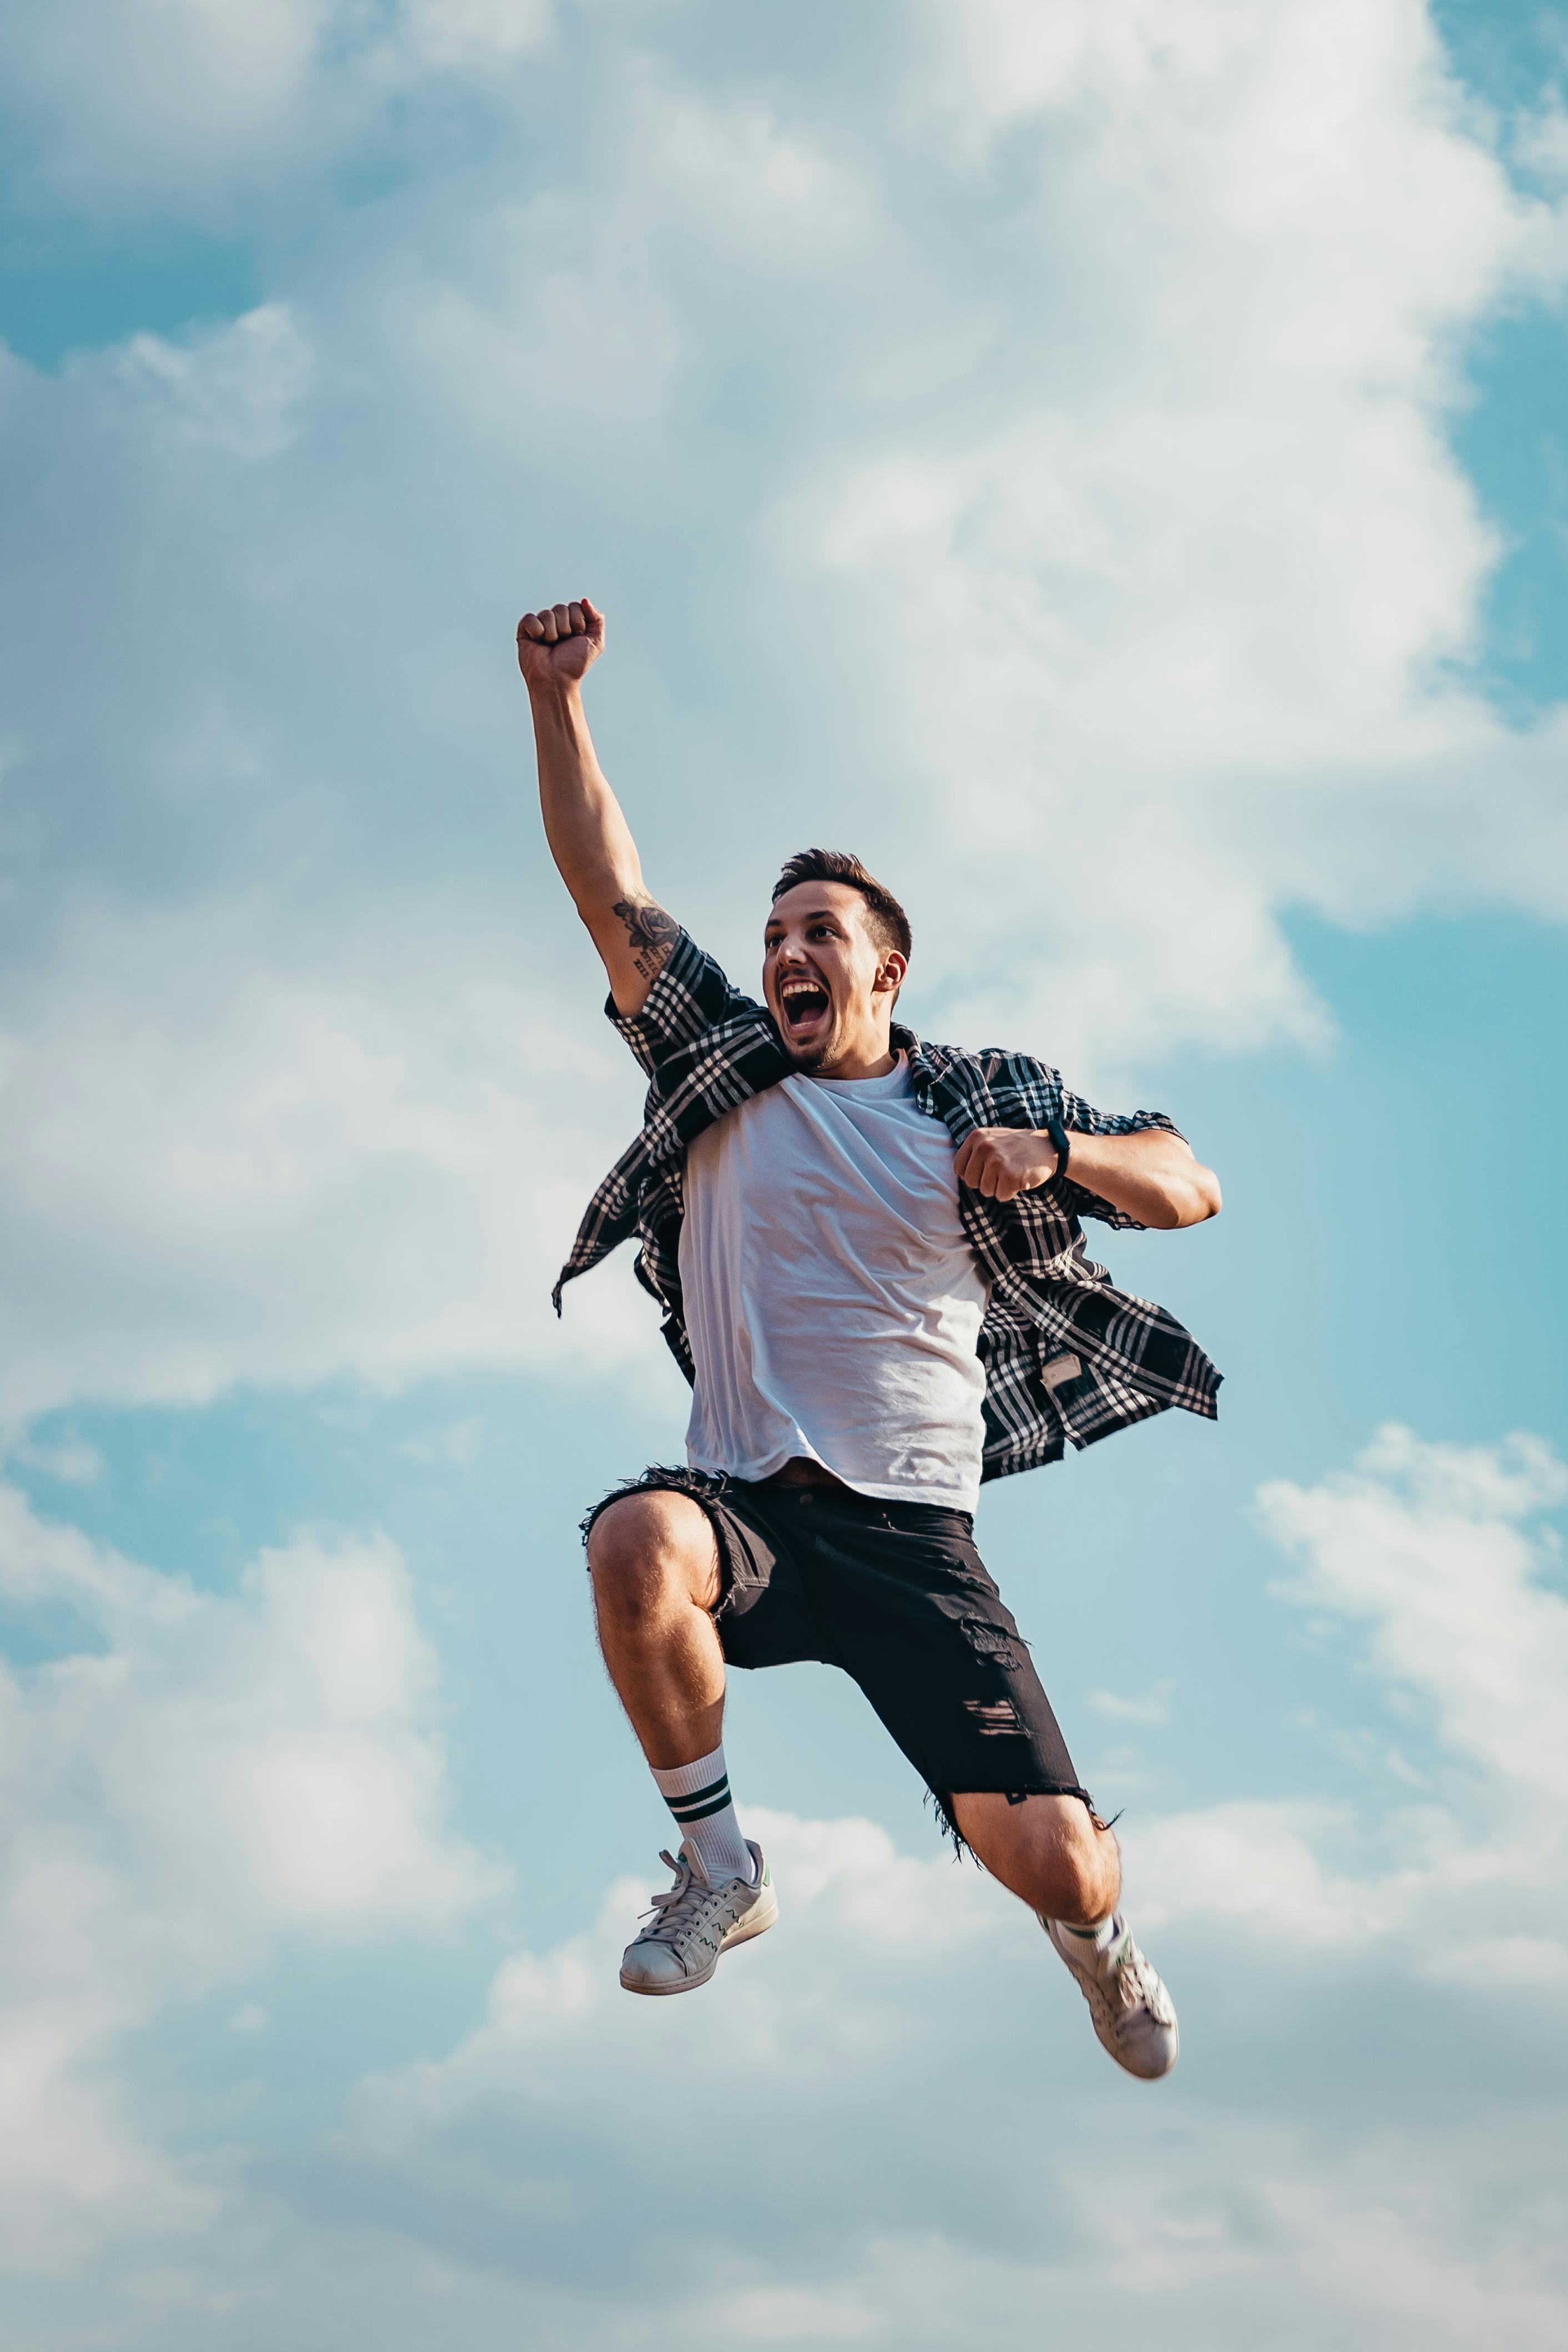 Ein glücklicher Mann beim Springen | Quelle: Pexels